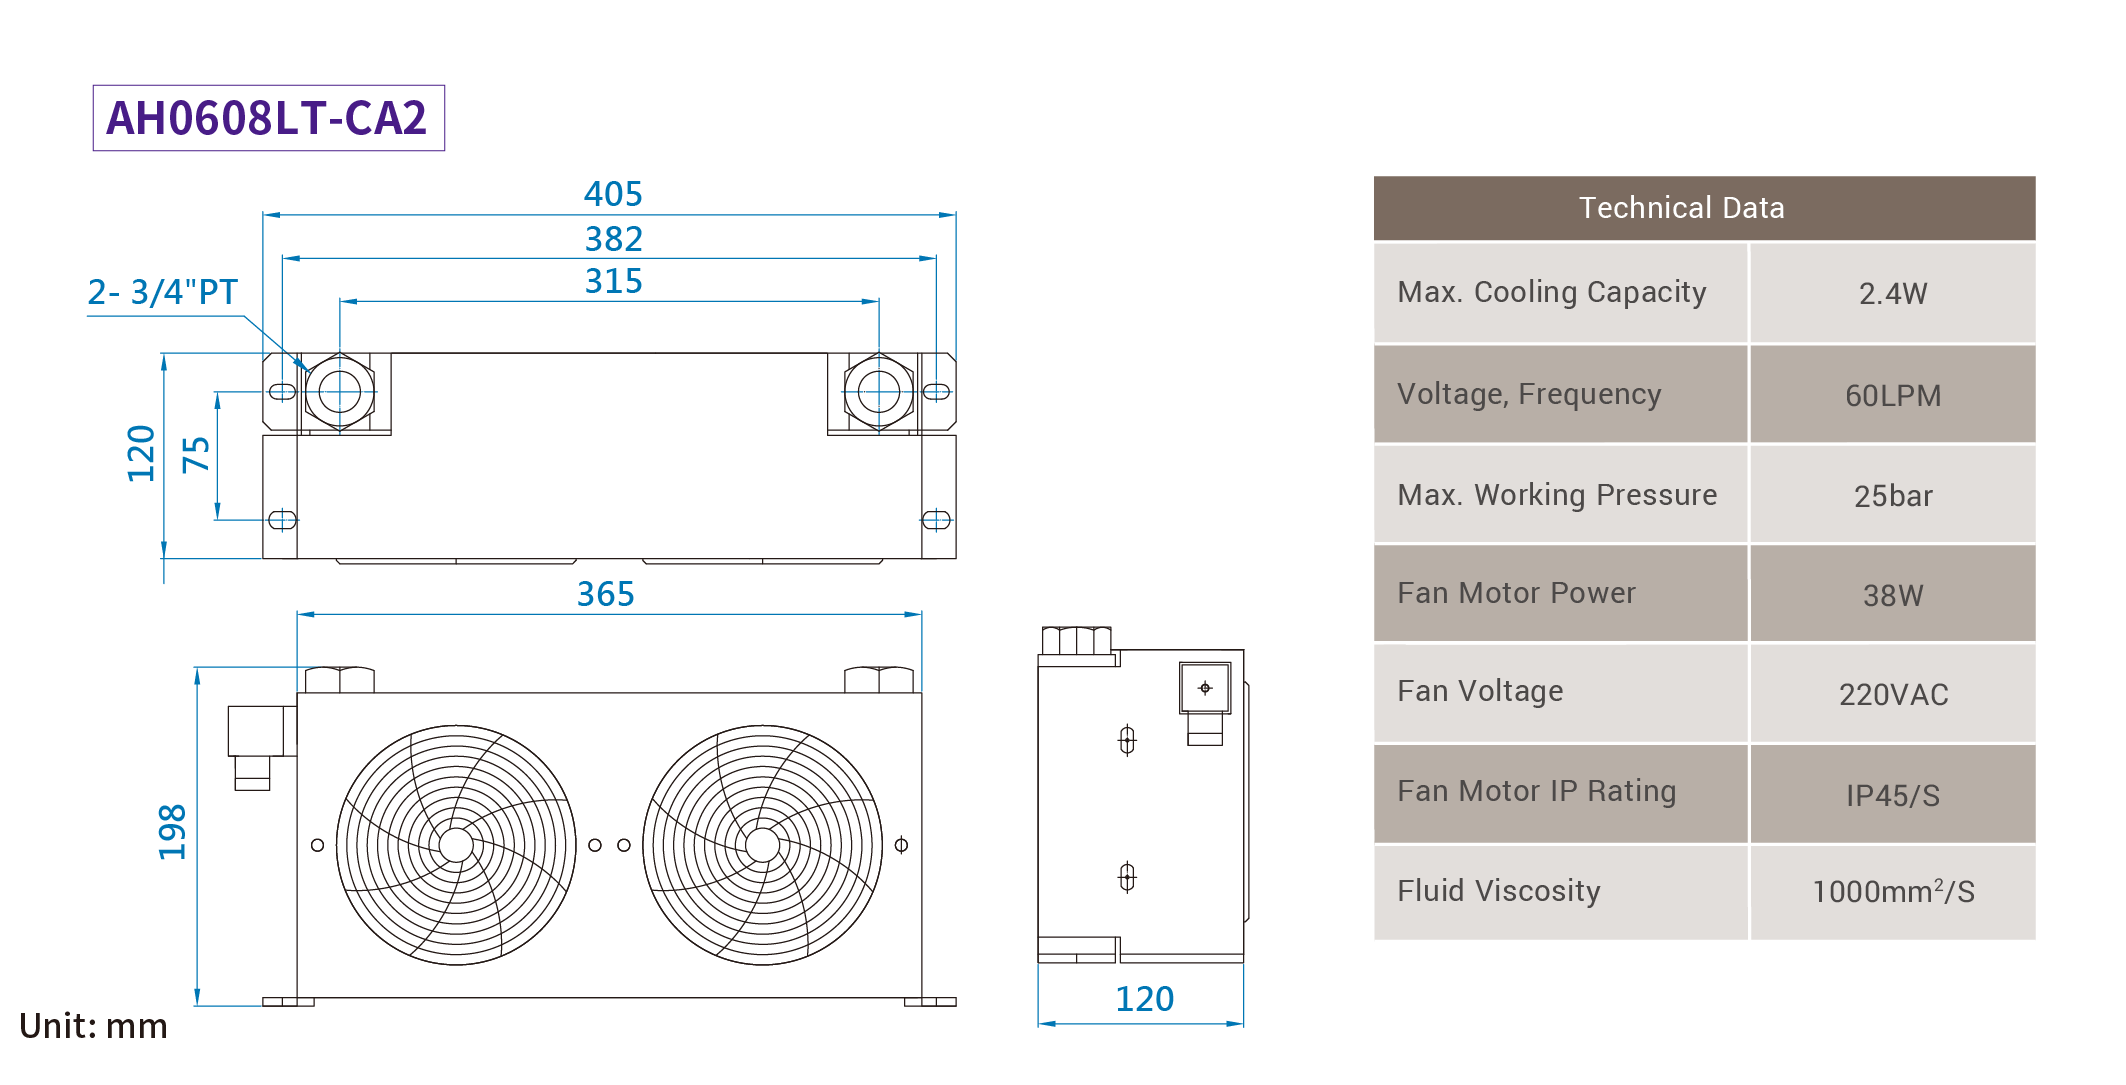 CMLMedium &amp; summus pressura aer refrigeratus coolers, Mensuratio, dimensio AH0608LT-CA2